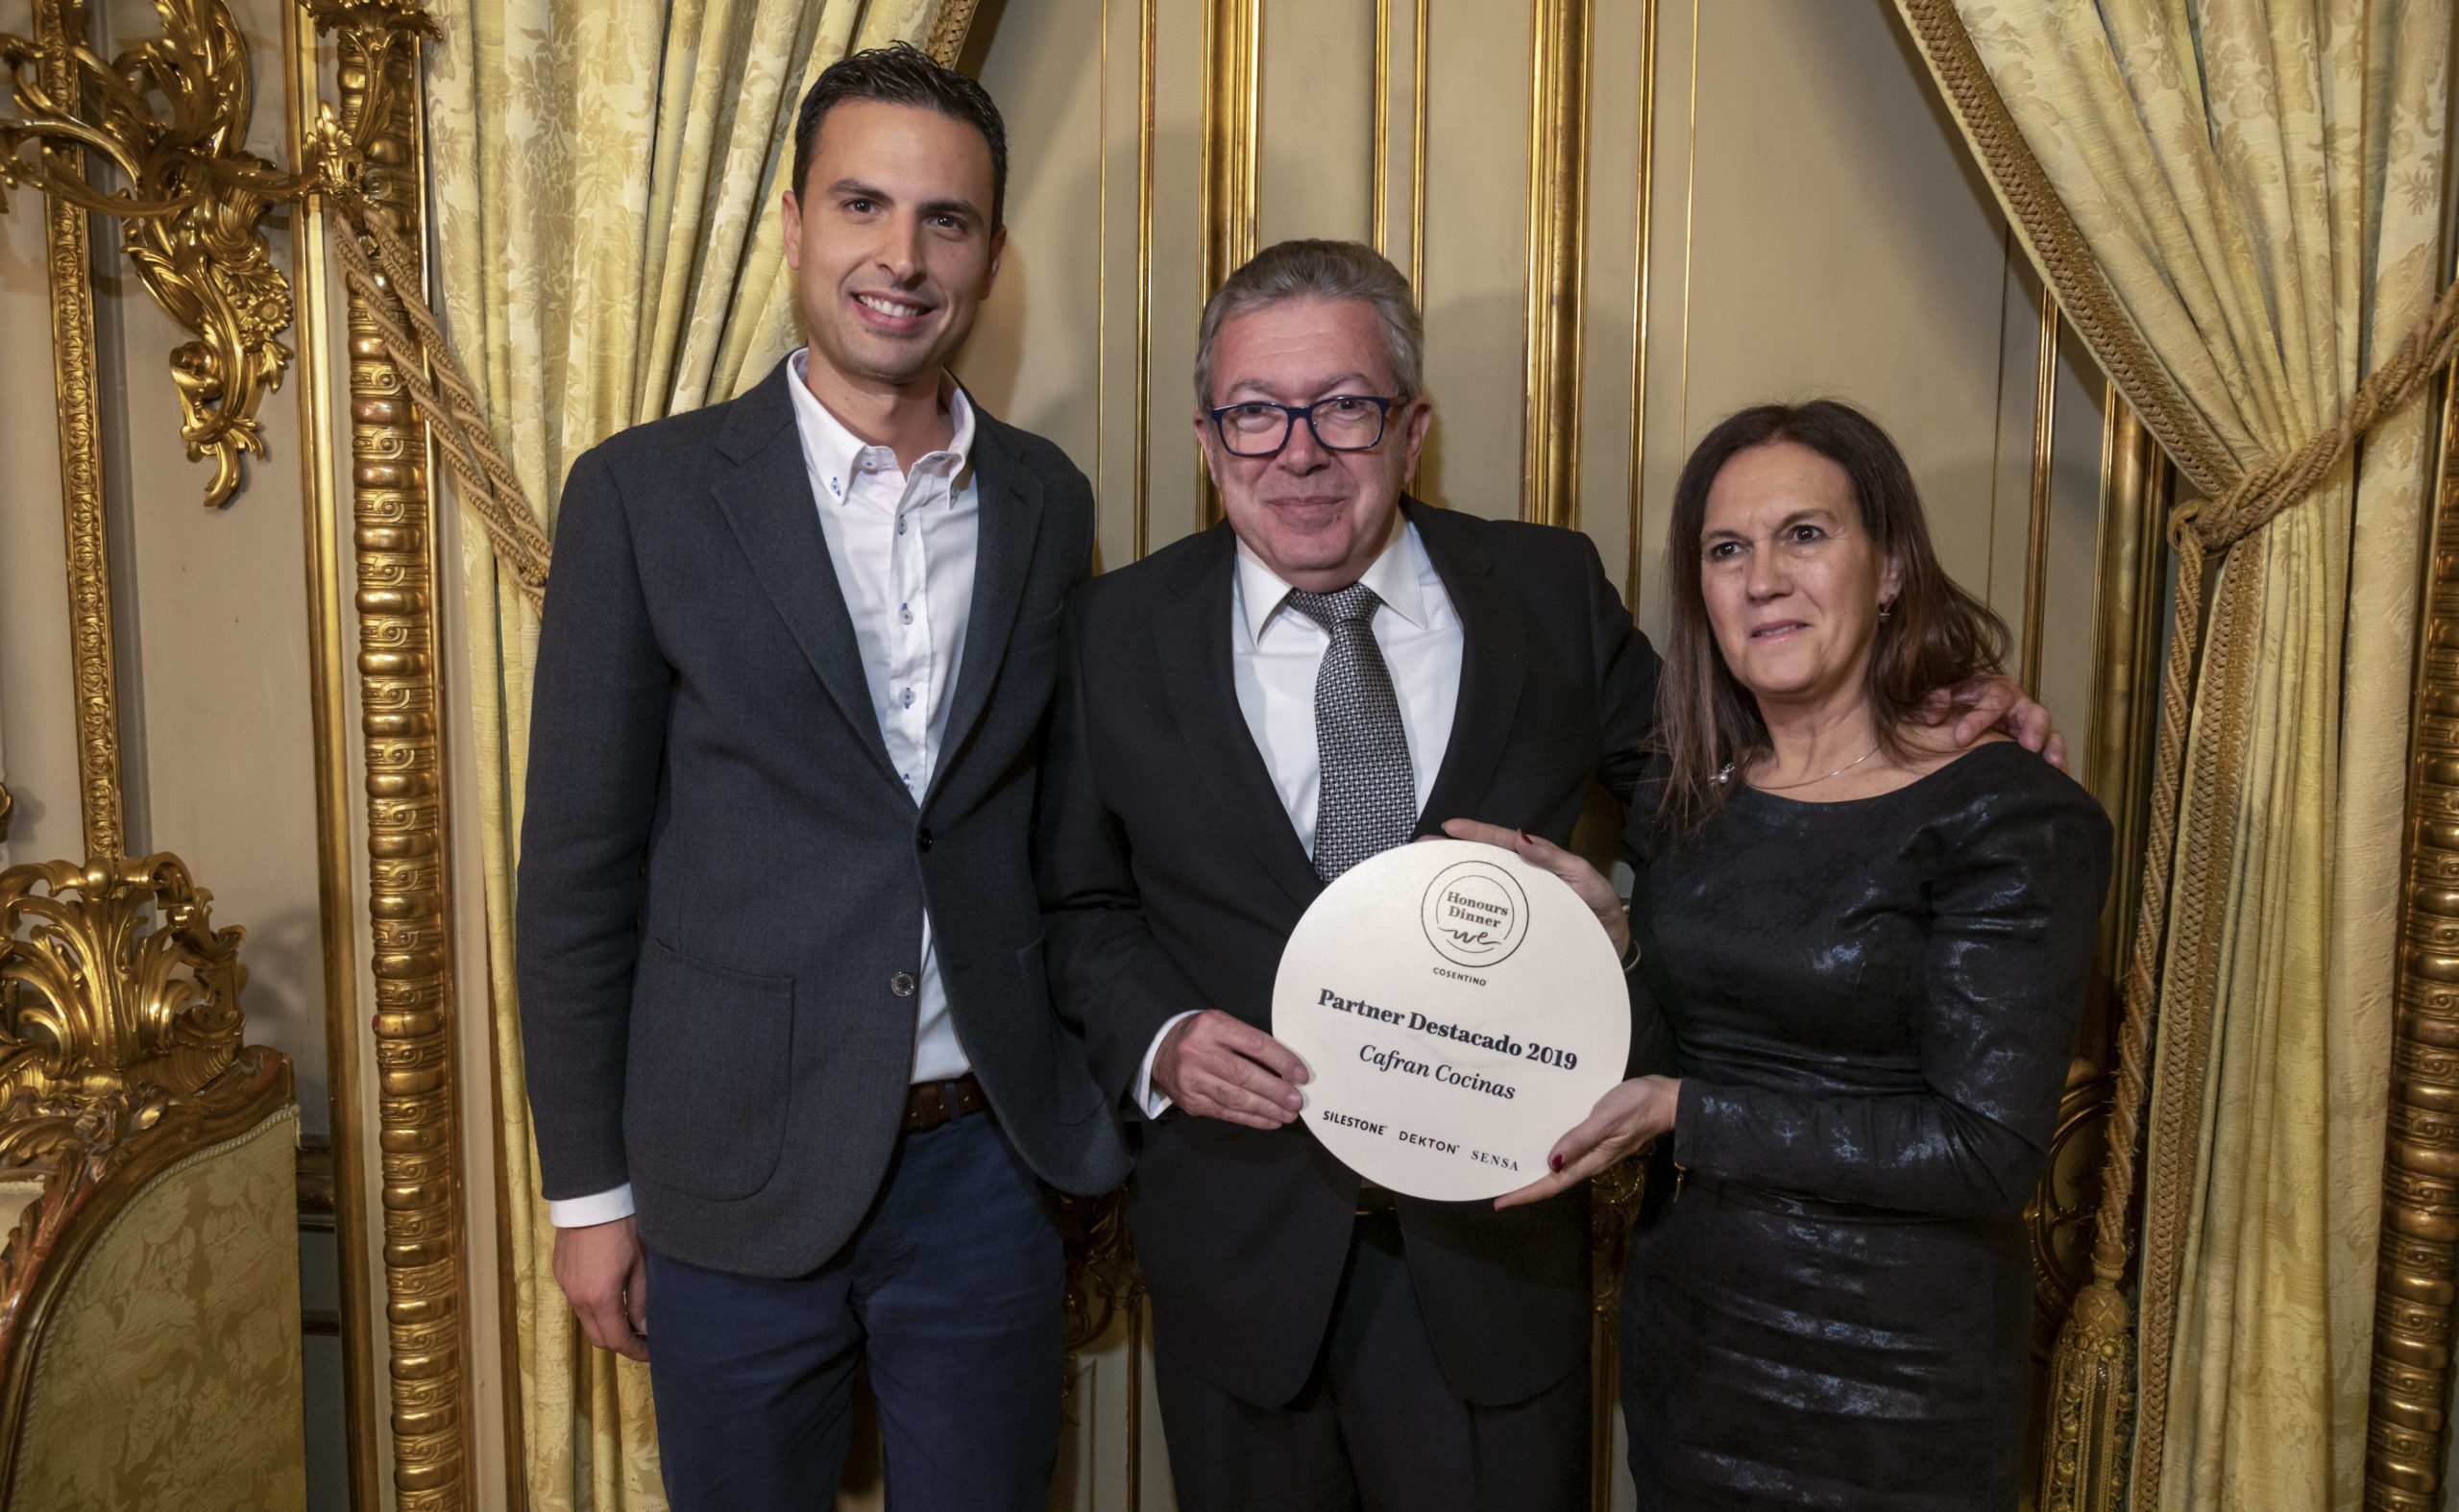 Partner Destacado Cosentino 2019: Entrega de premios